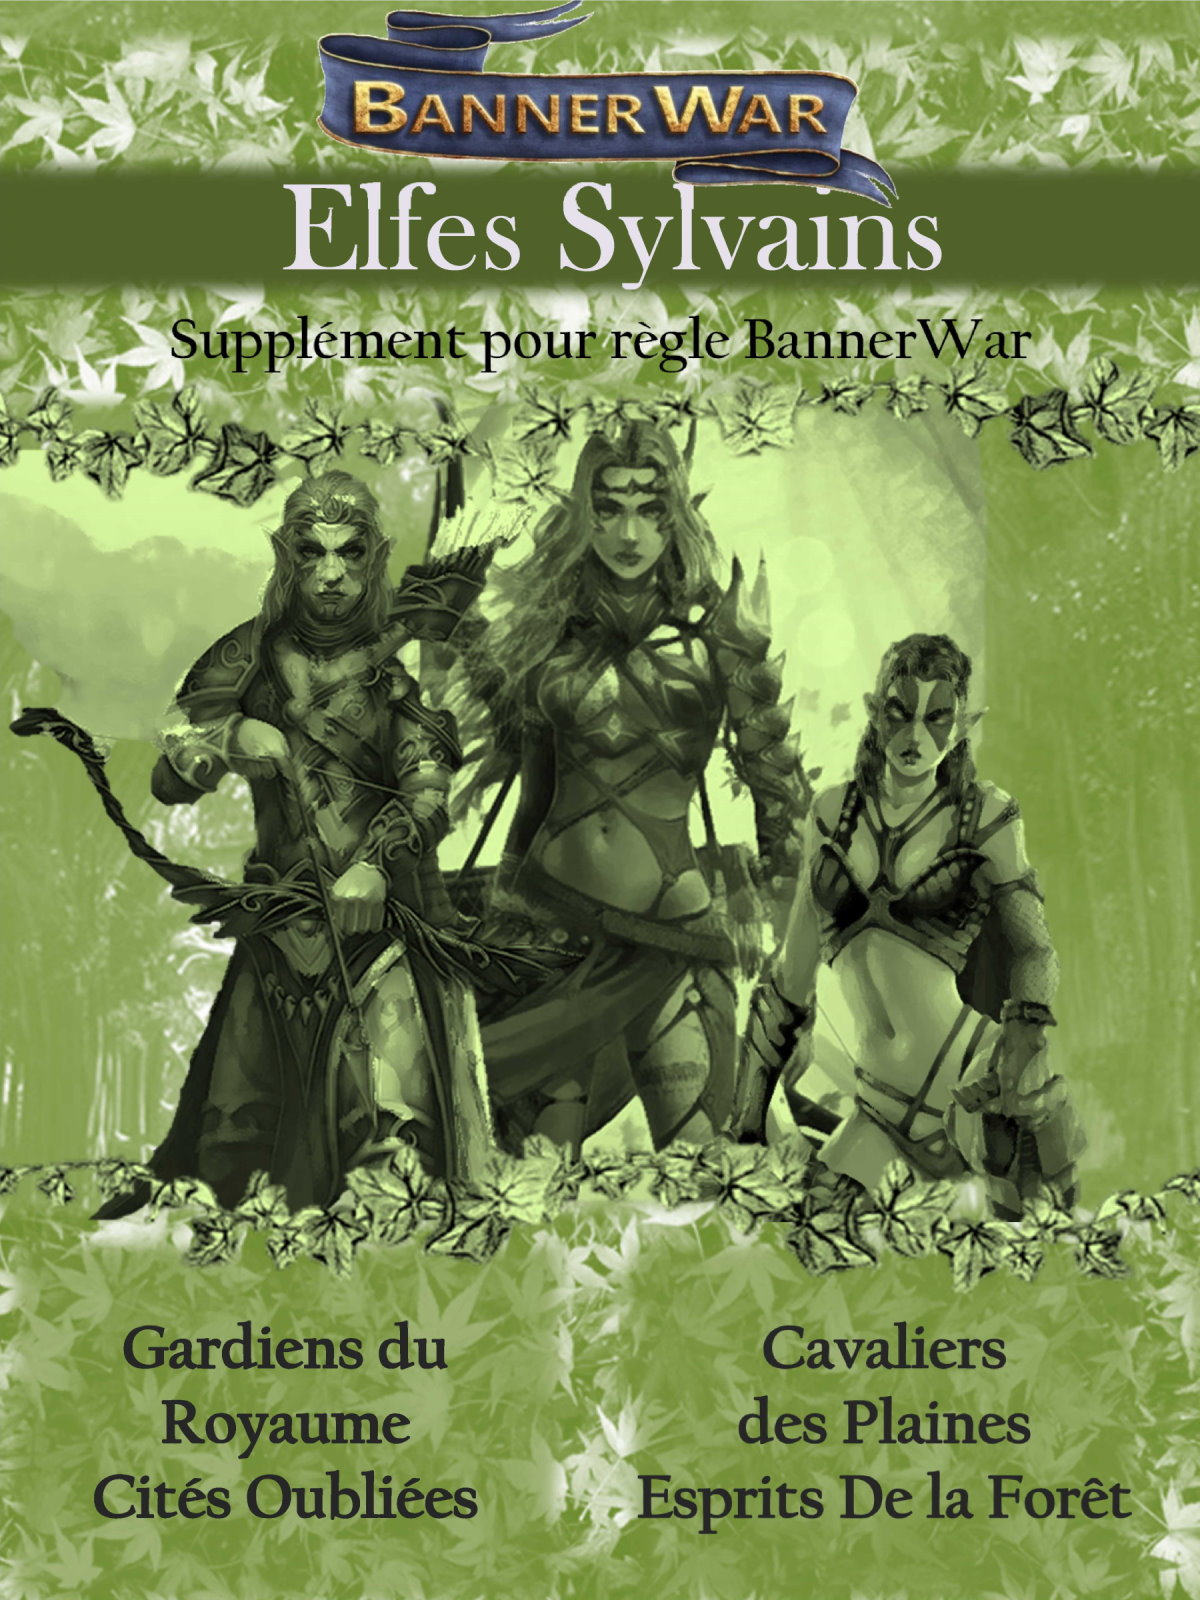 BannerWar : Jeu de Batailles de Masse avec figurines 10mm Warhammer elves sylvan